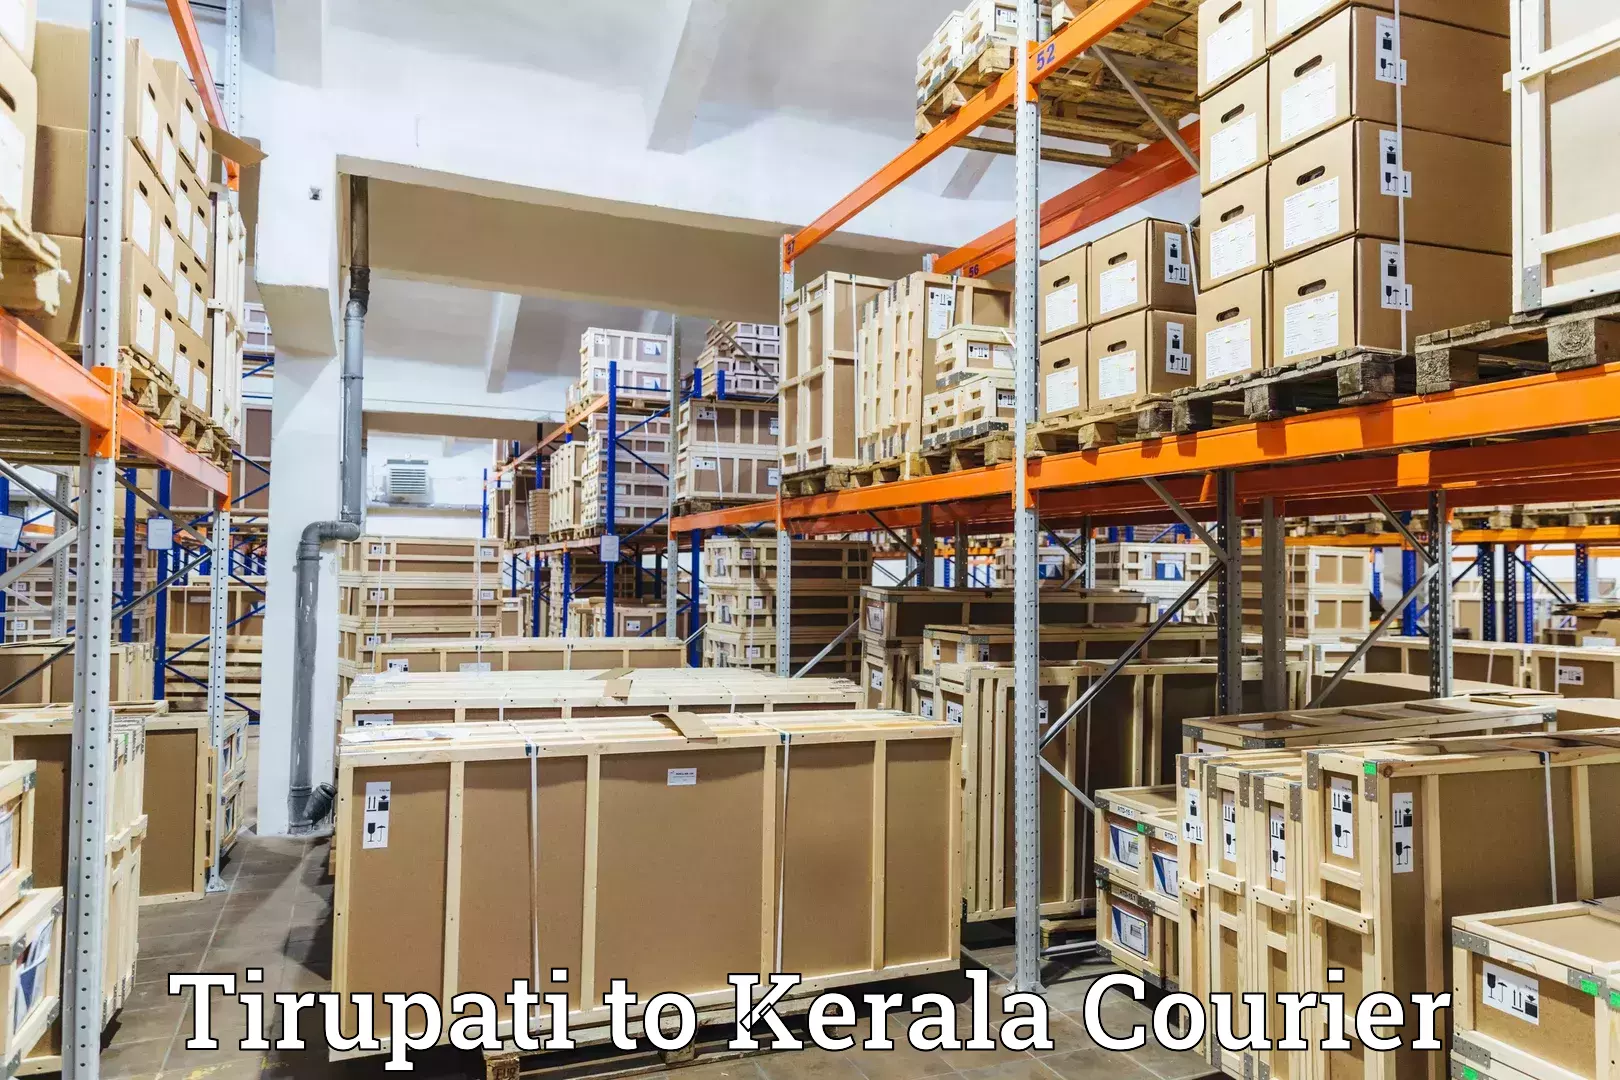 Courier service comparison Tirupati to Kerala